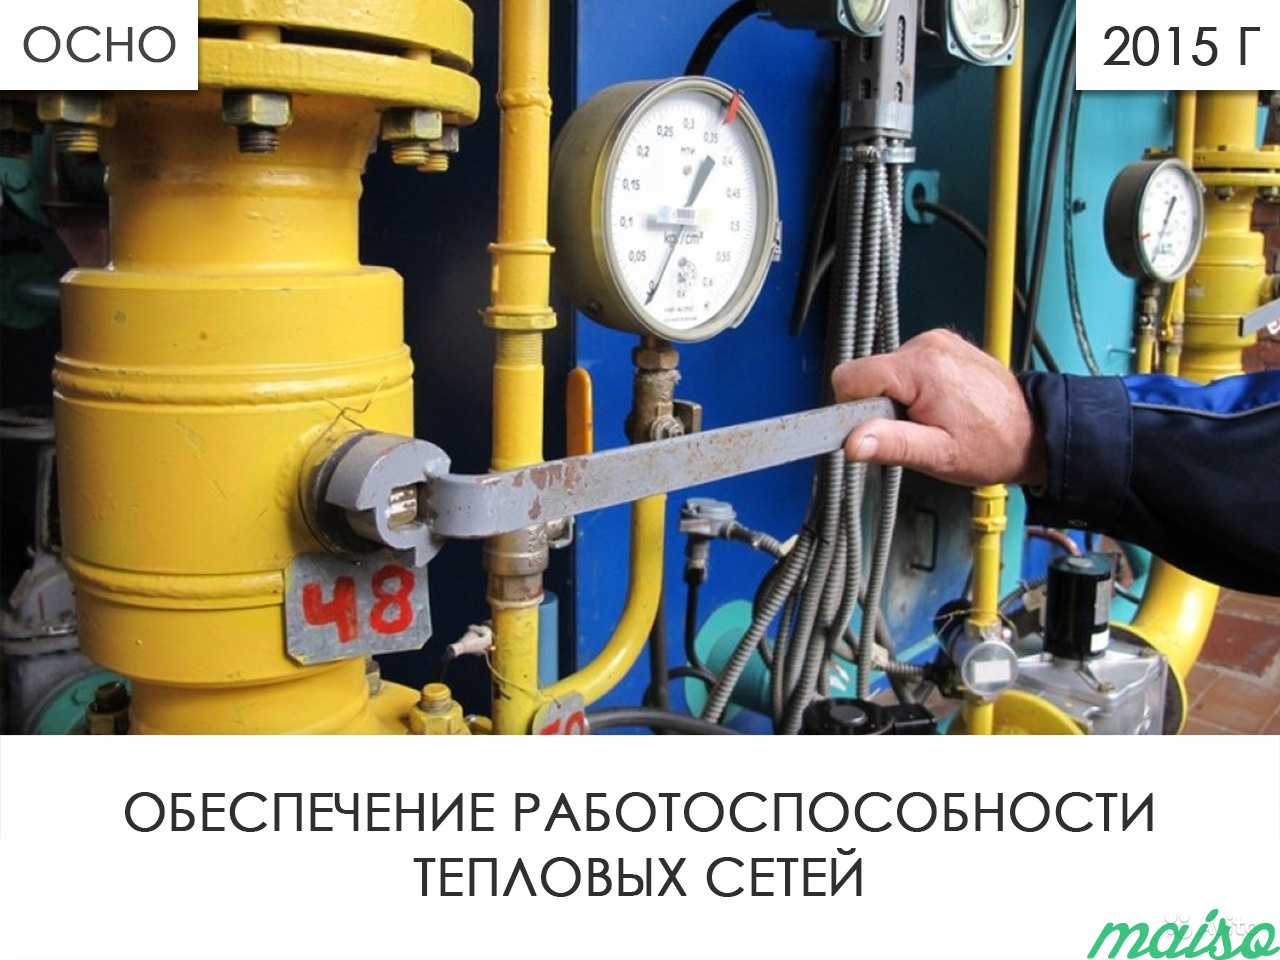 Обеспечение работоспособности тепловых сетей в Москве. Фото 1